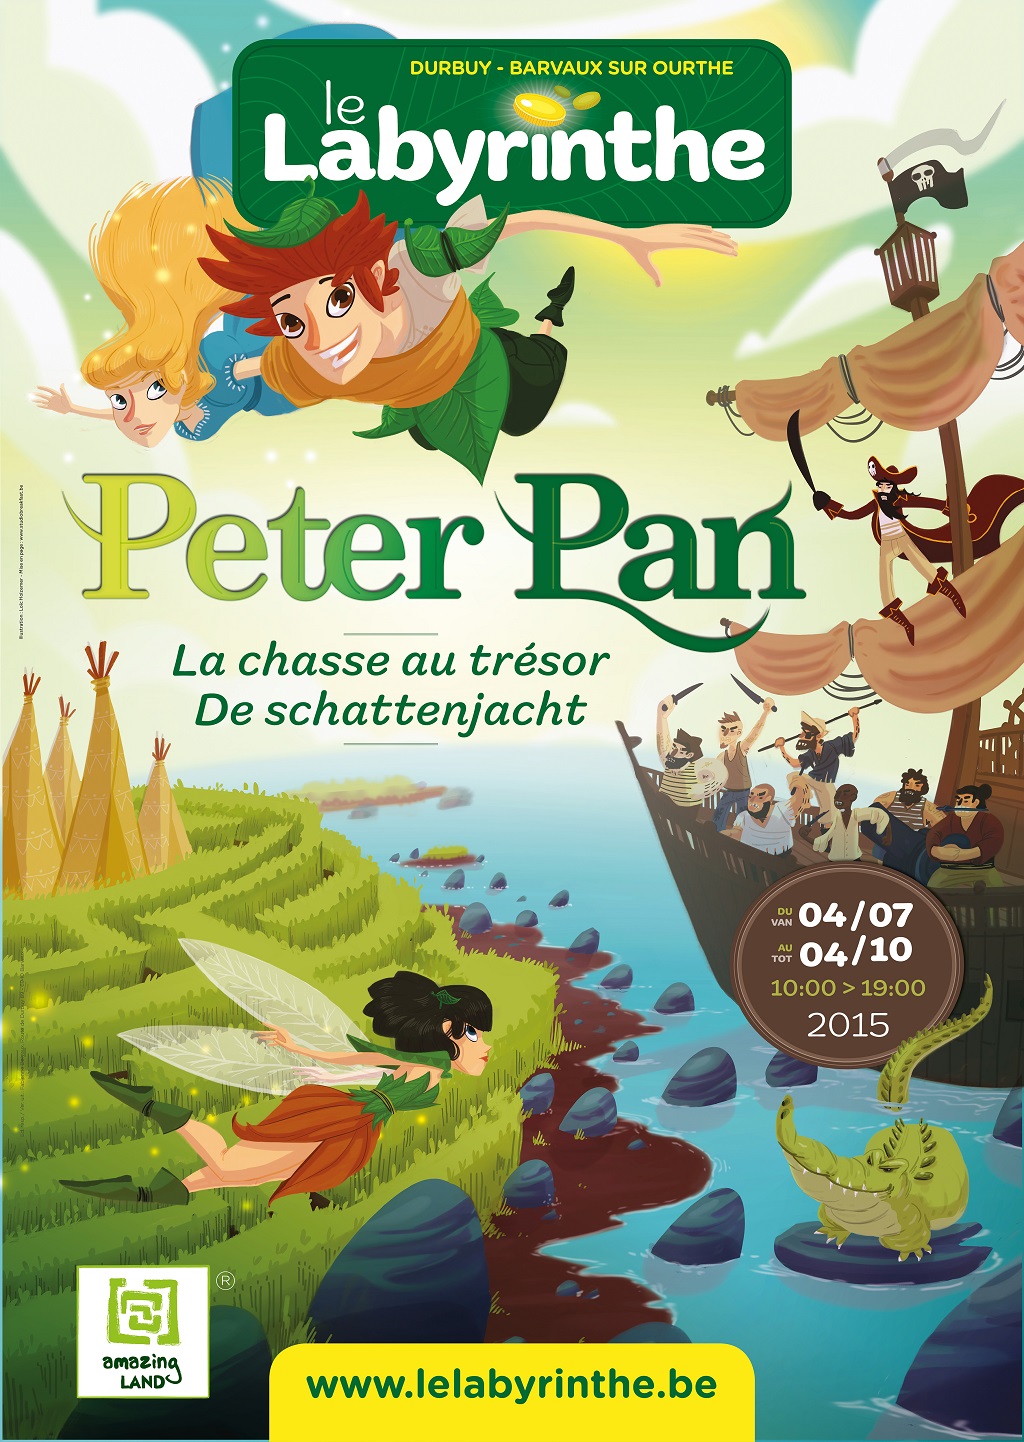 Barvaux :le labyrinthe accueille Peter Pan – Gagner  vos entrées  !